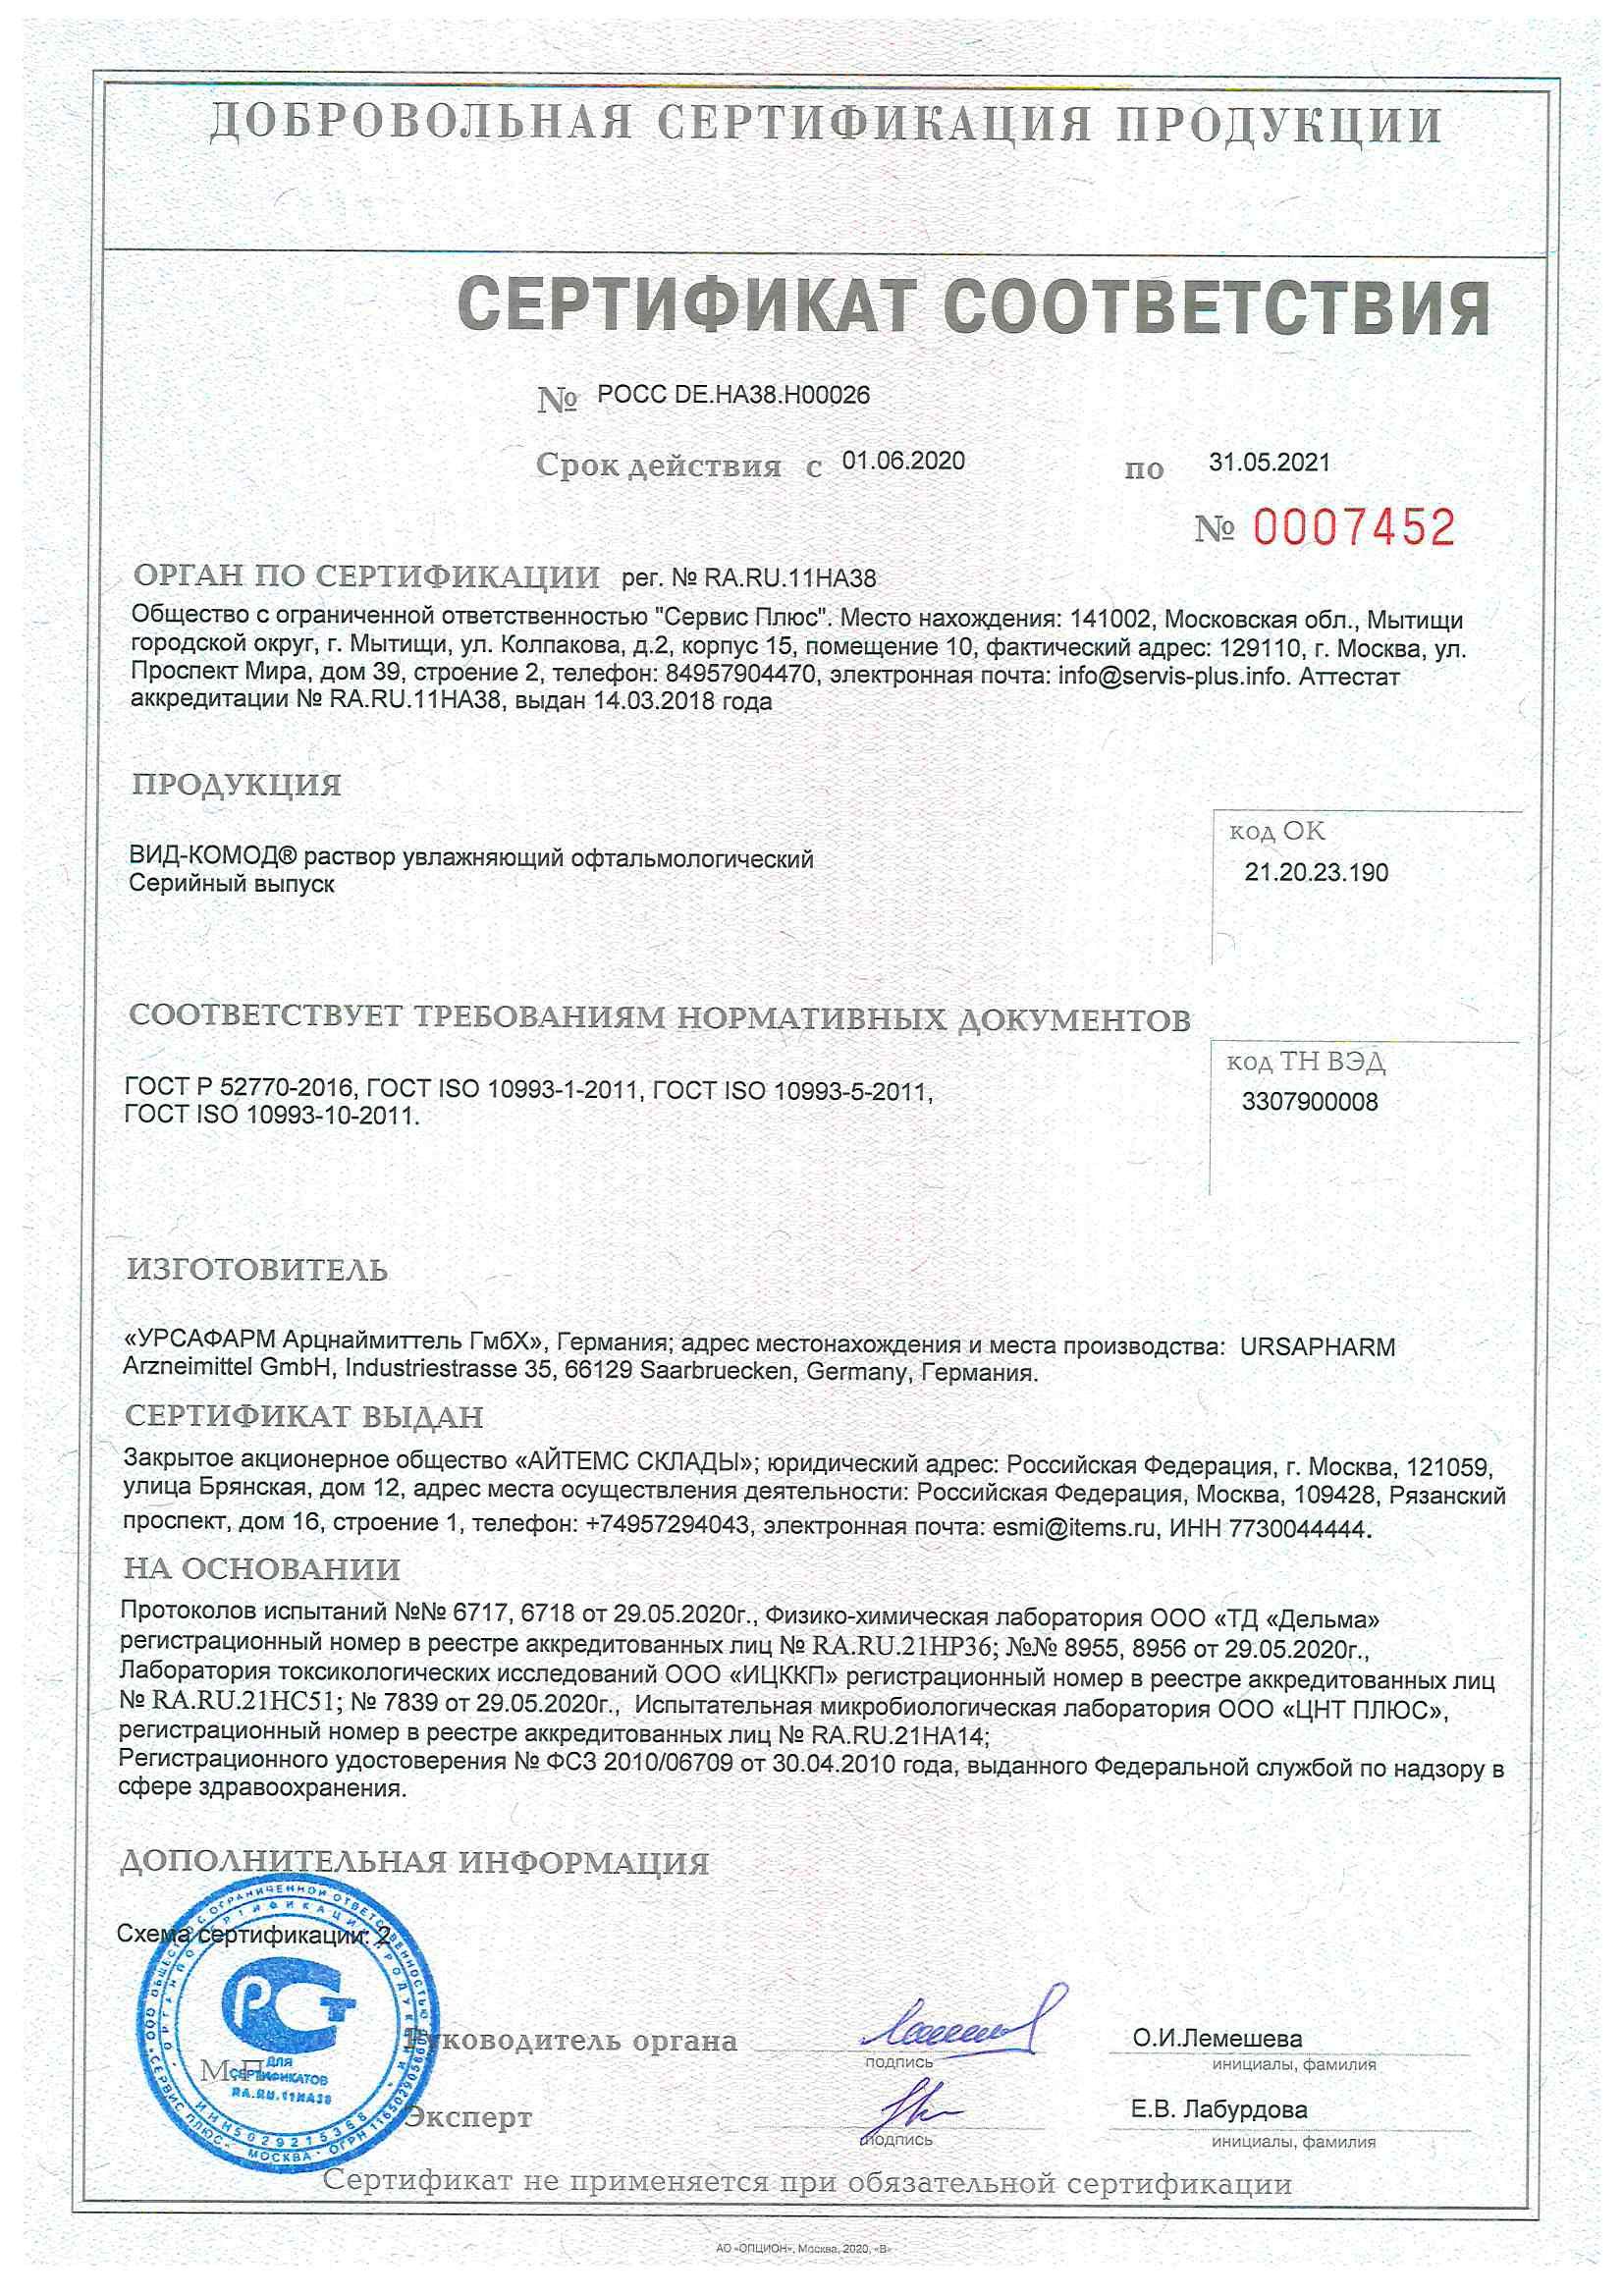 Вид-Комод сертификат